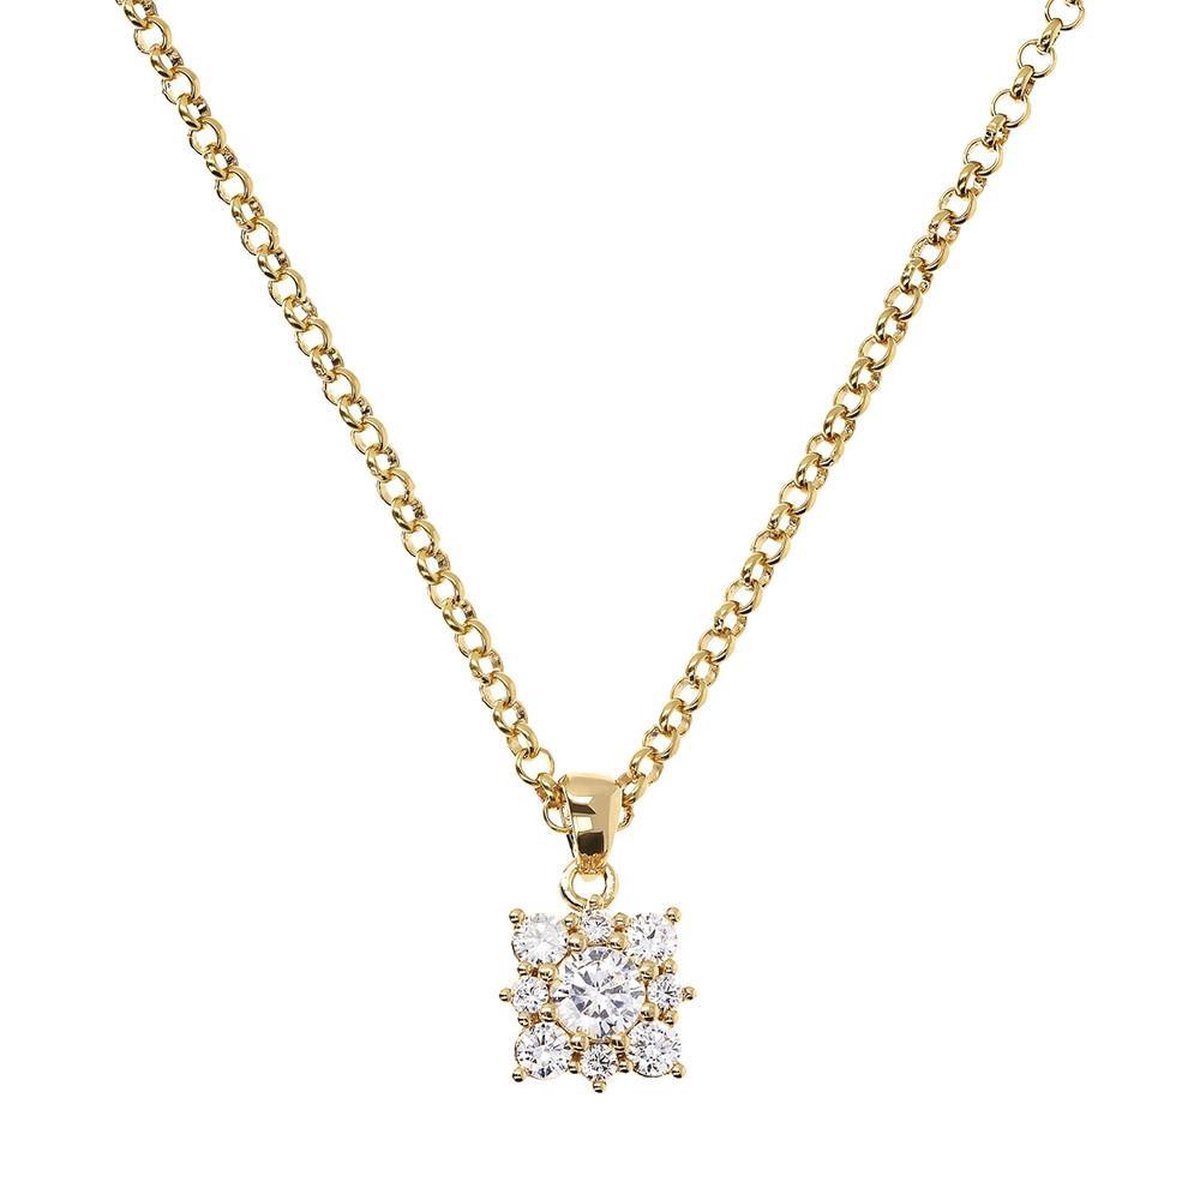 Necklace with gemstone pendant WSBZ01680YY